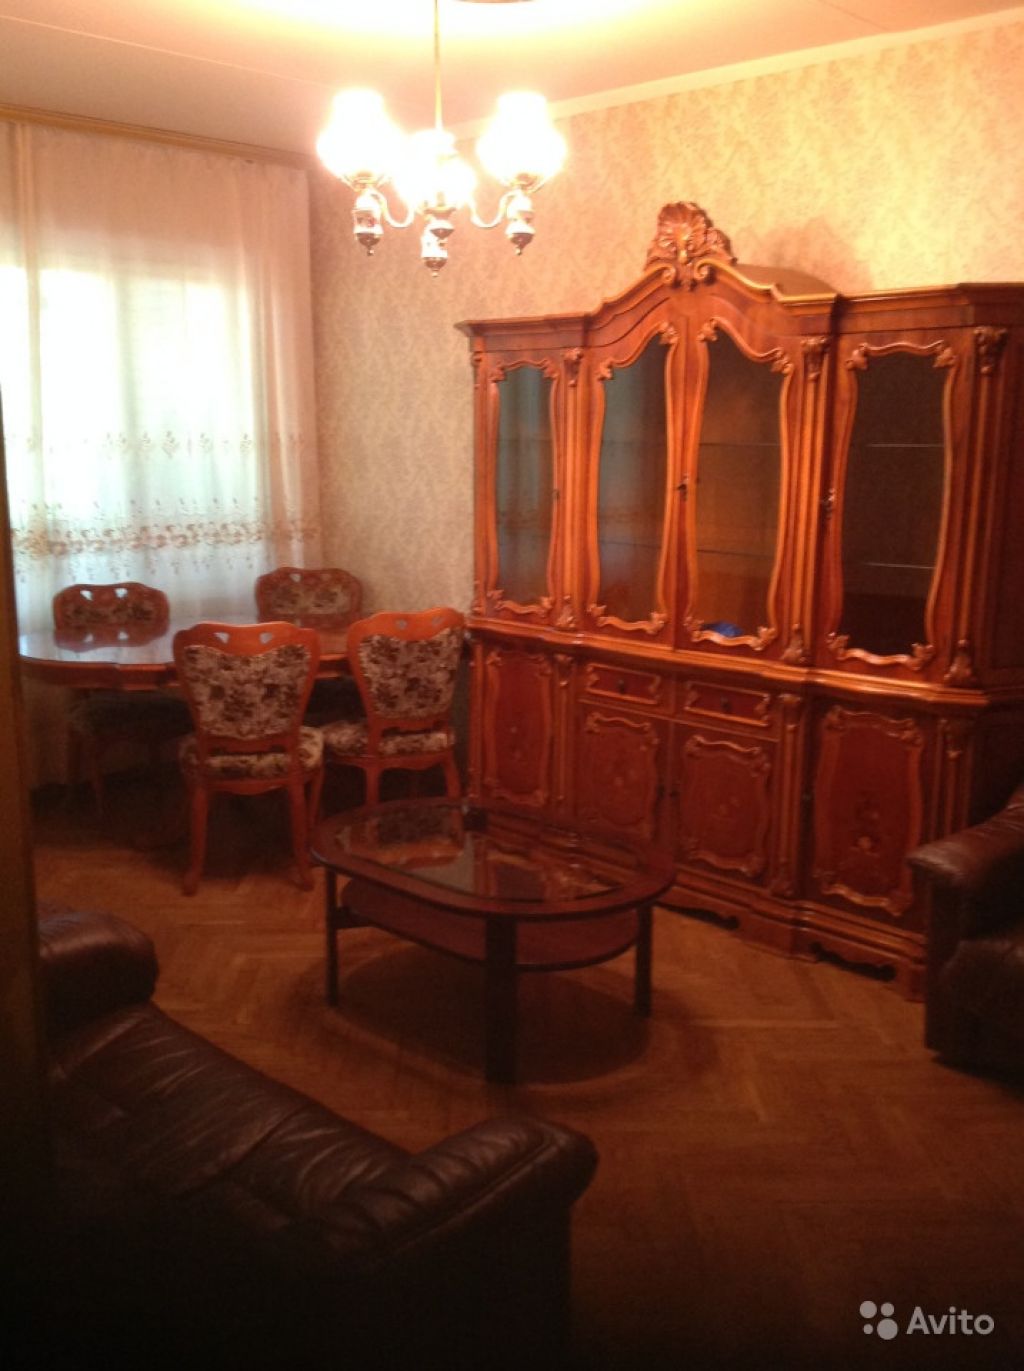 Сдам квартиру 3-к квартира 70 м² на 3 этаже 9-этажного кирпичного дома в Москве. Фото 1